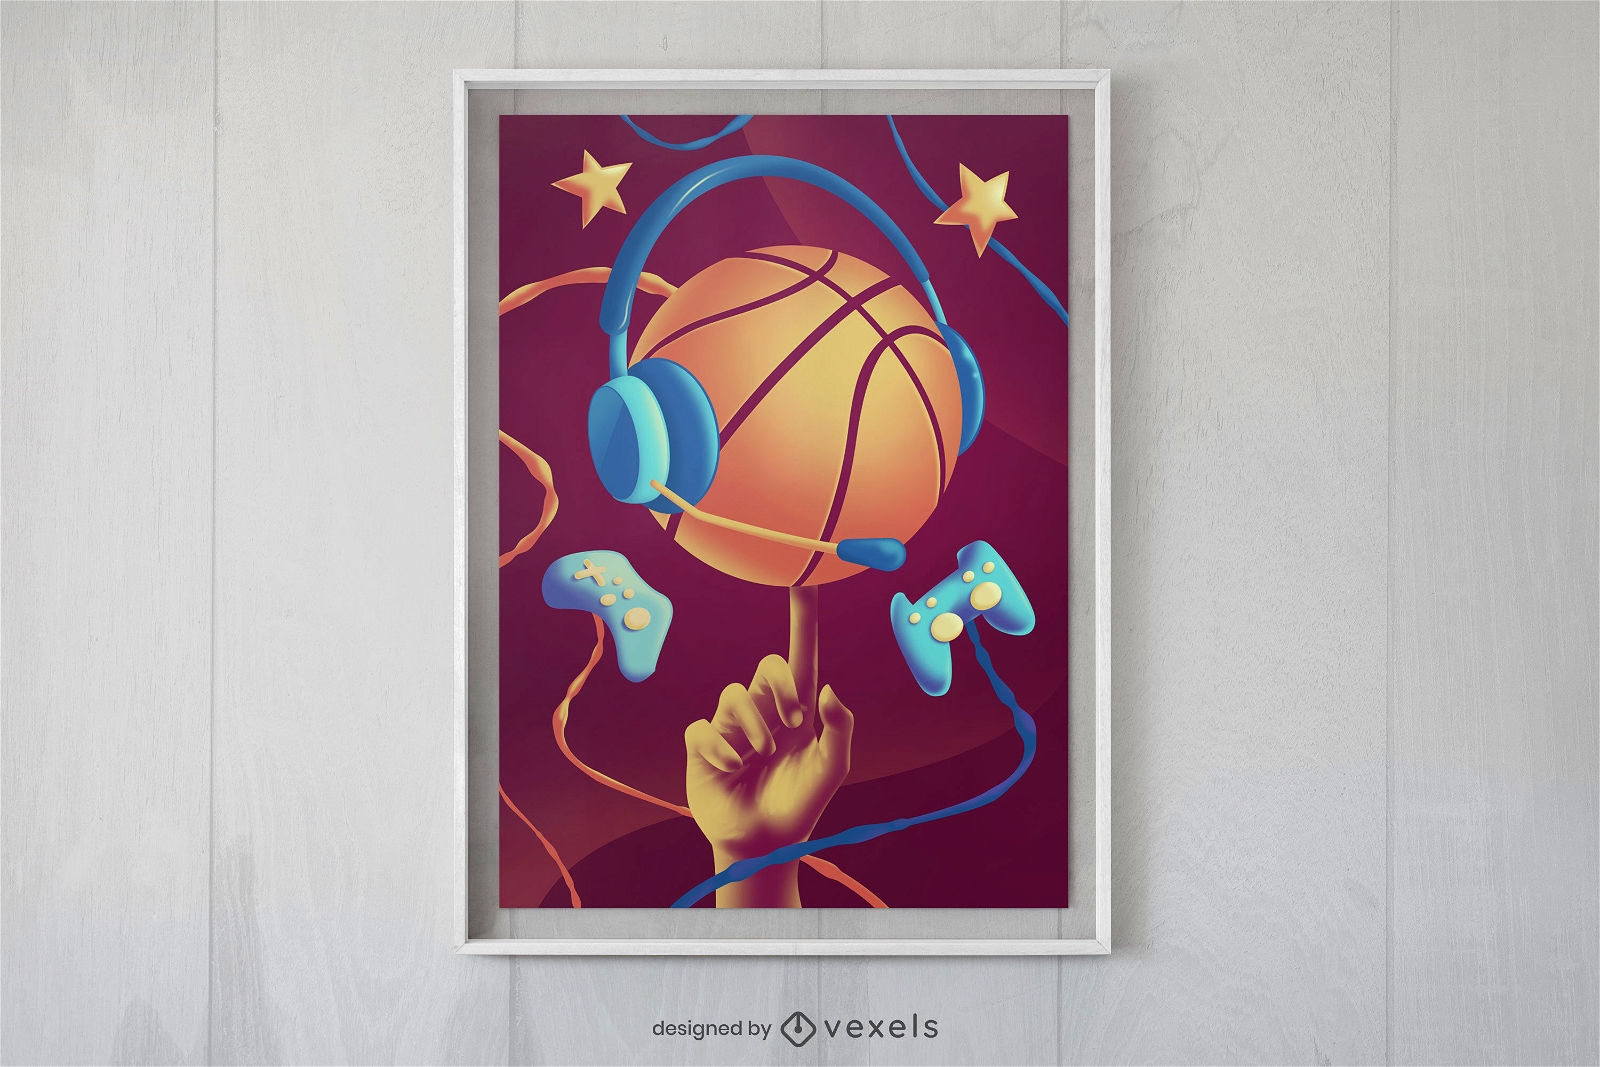 Plakatdesign f?r Basketball und Joysticks